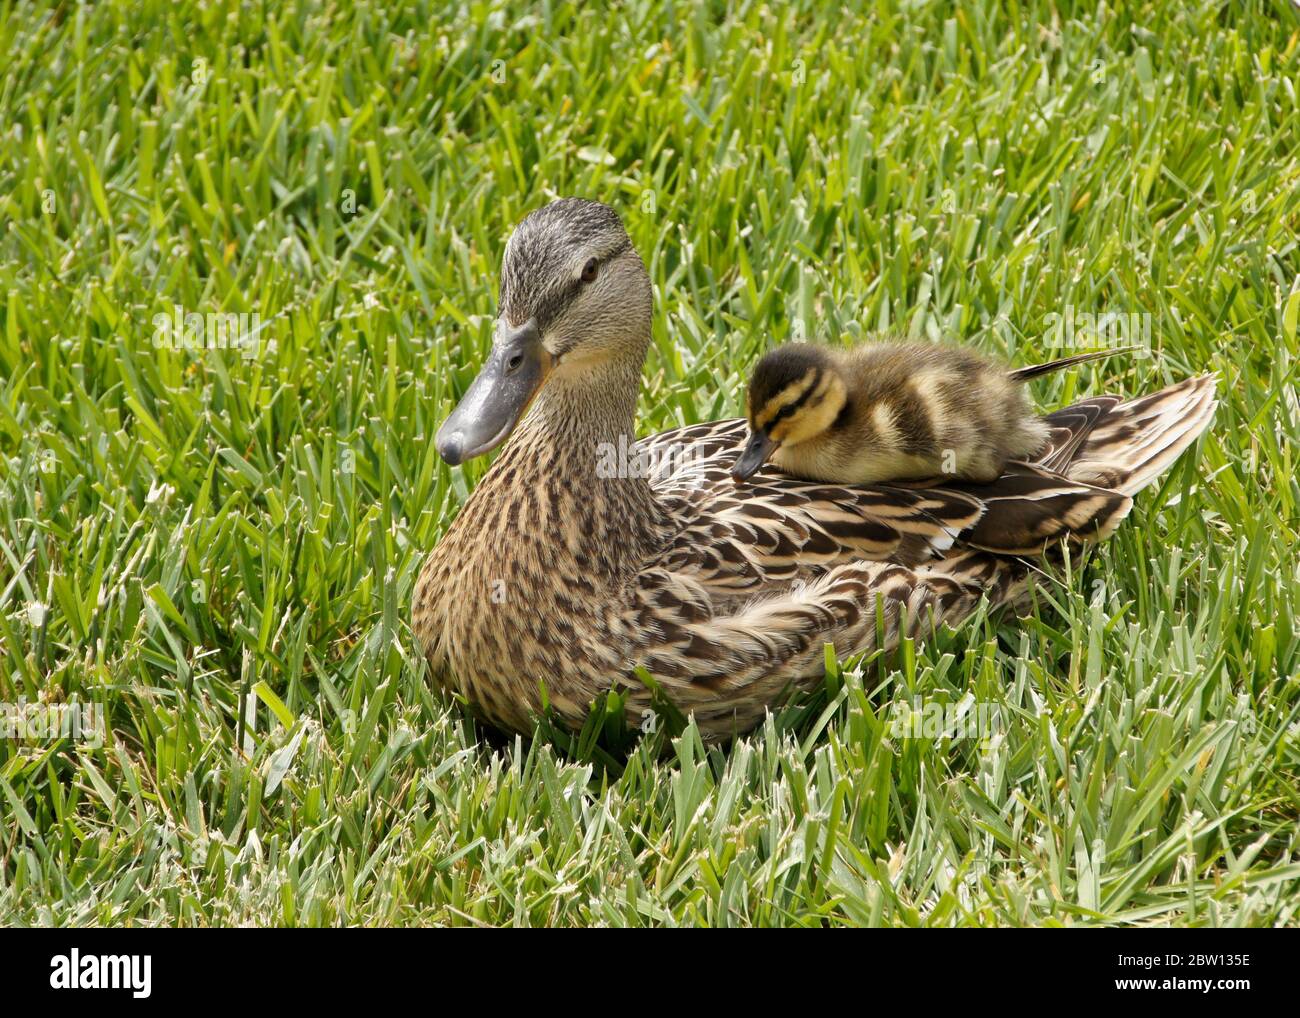 Femmina (gallina) anatra mallard riposante in erba con anatroccolo seduto sulla schiena, California del Sud Foto Stock